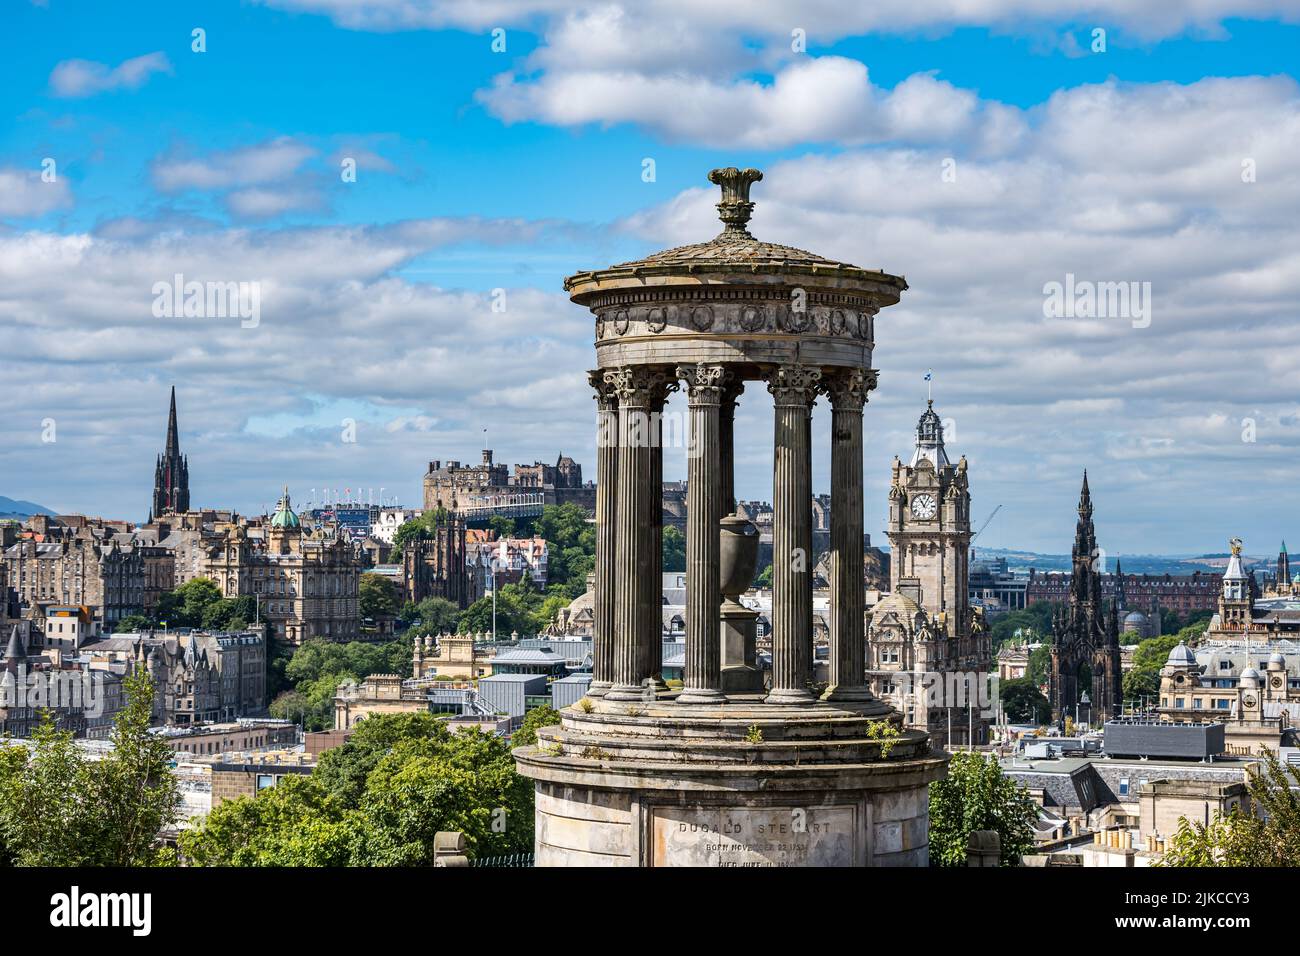 Vista iconica del monumento di Dugald Stewart sullo skyline della città con il castello di Edimburgo e la torre dell'orologio dell'hotel Balmoral, Edimburgo, Scozia, Regno Unito Foto Stock